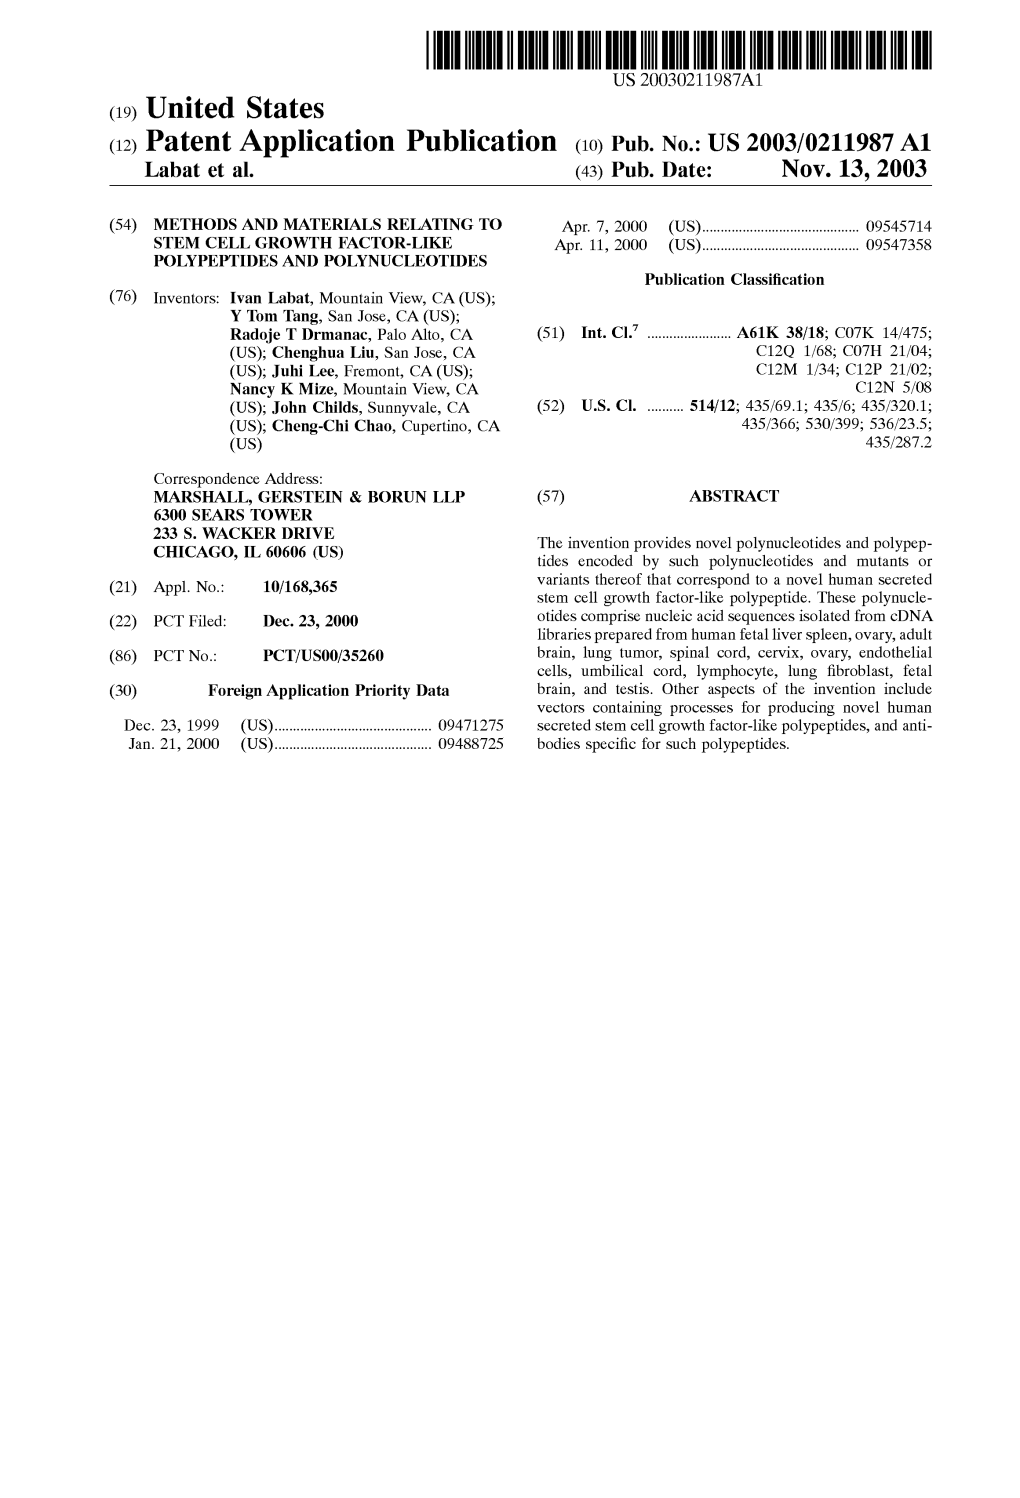 (12) Patent Application Publication (10) Pub. No.: US 2003/0211987 A1 Labat Et Al